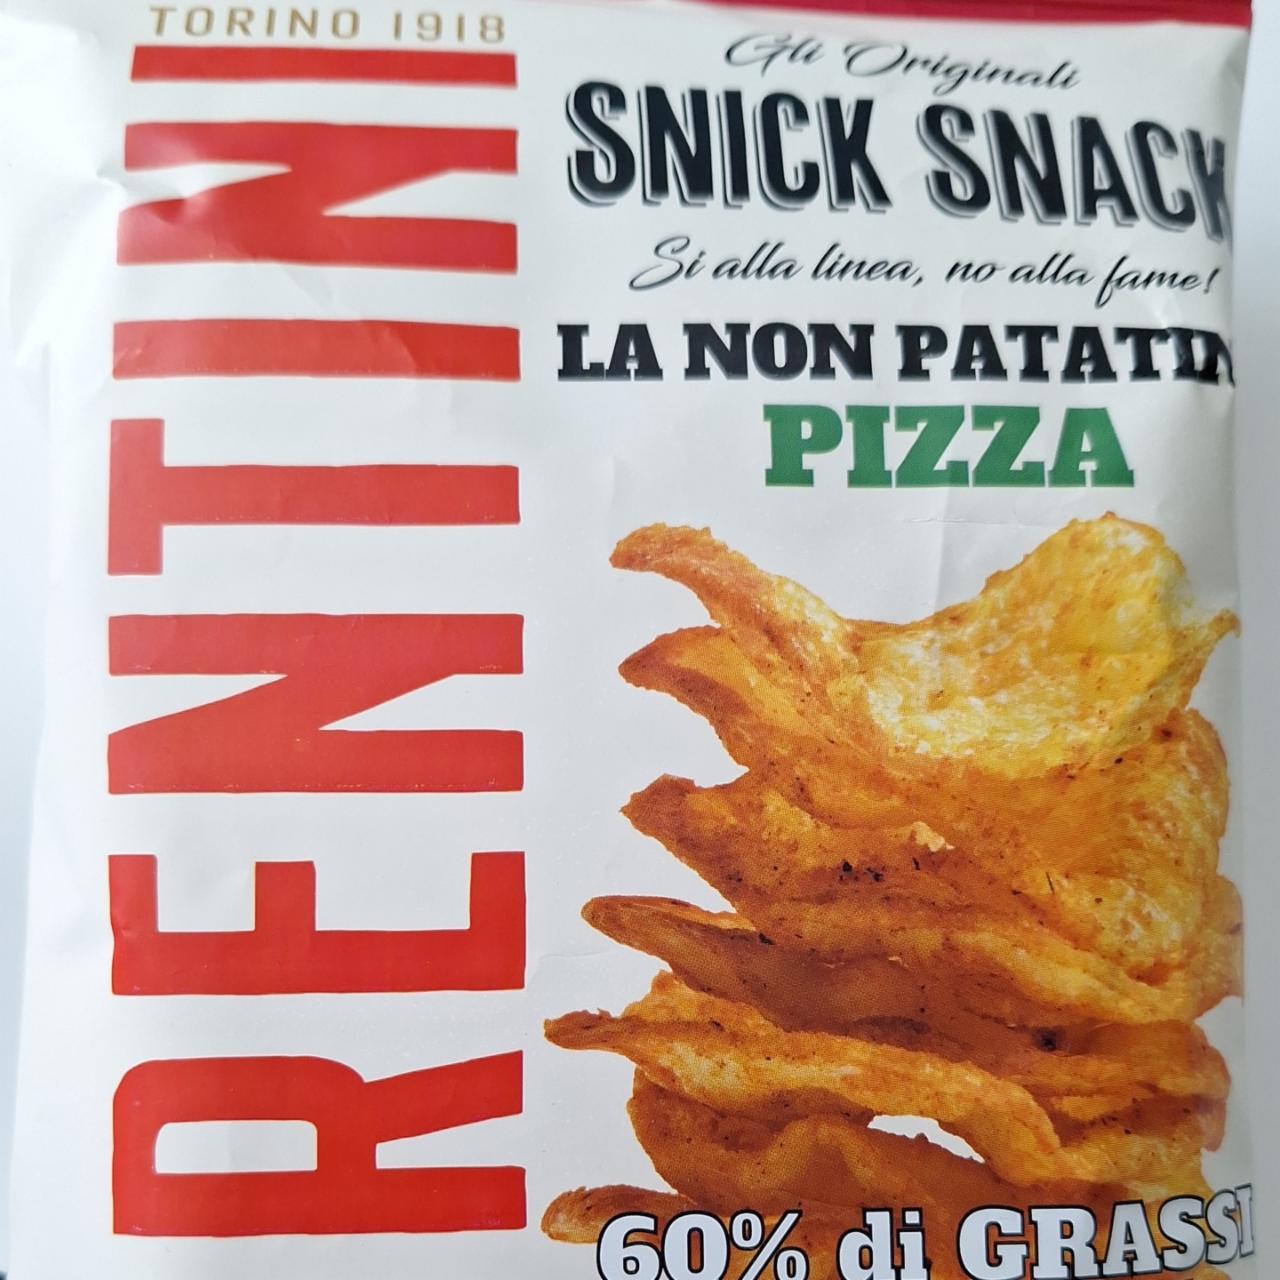 Fotografie - Snick snack la non patato pizza Fiorentini